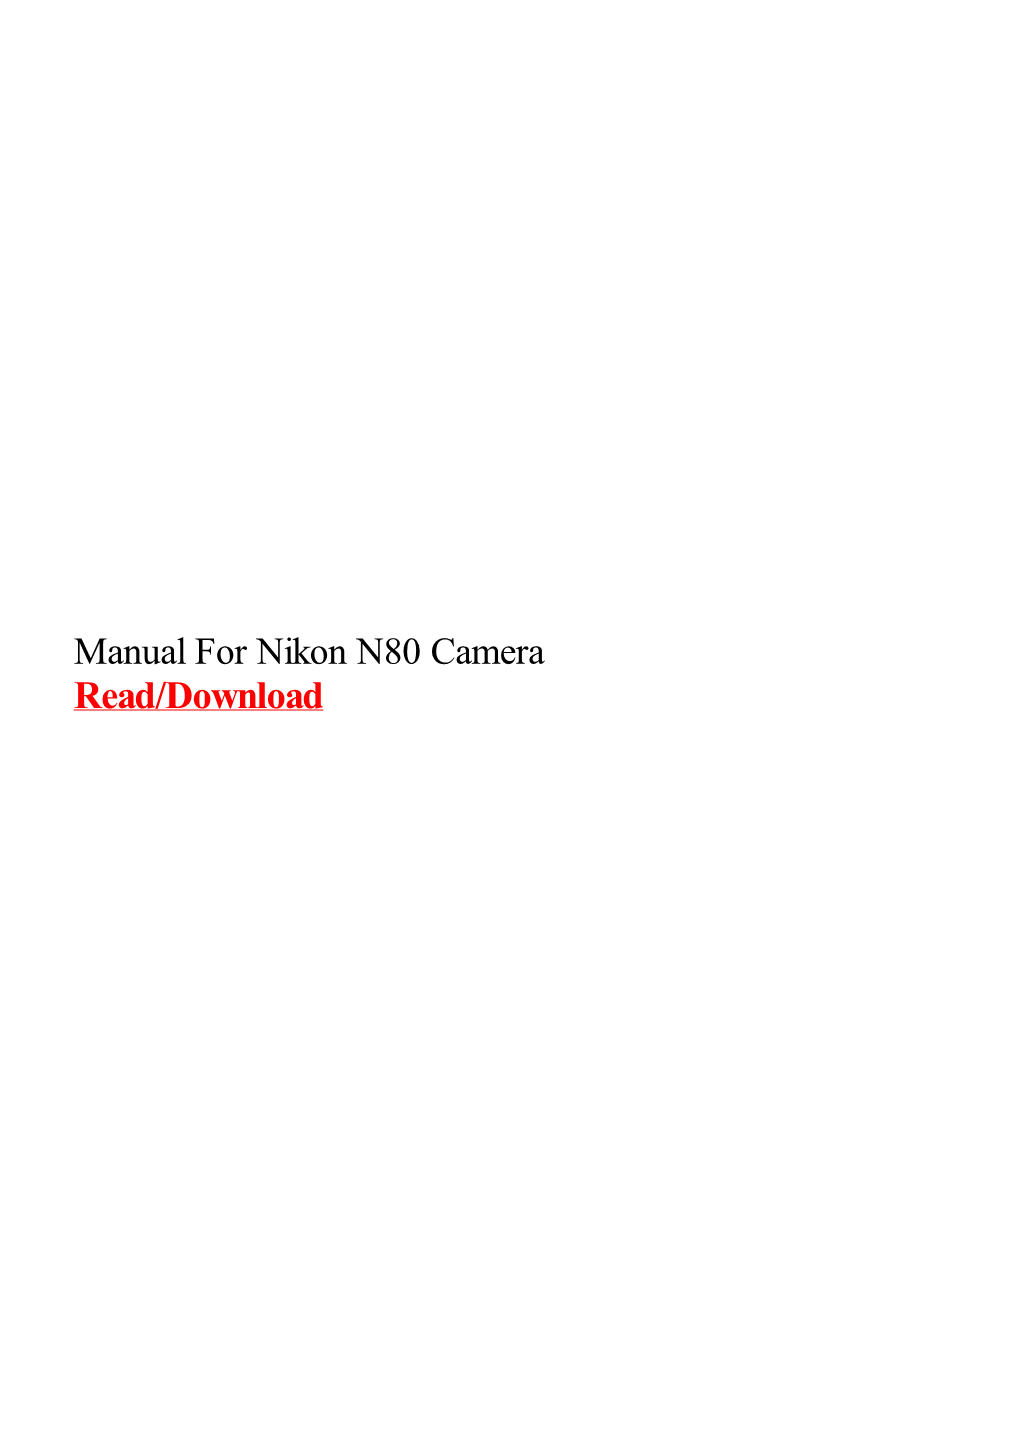 Manual for Nikon N80 Camera